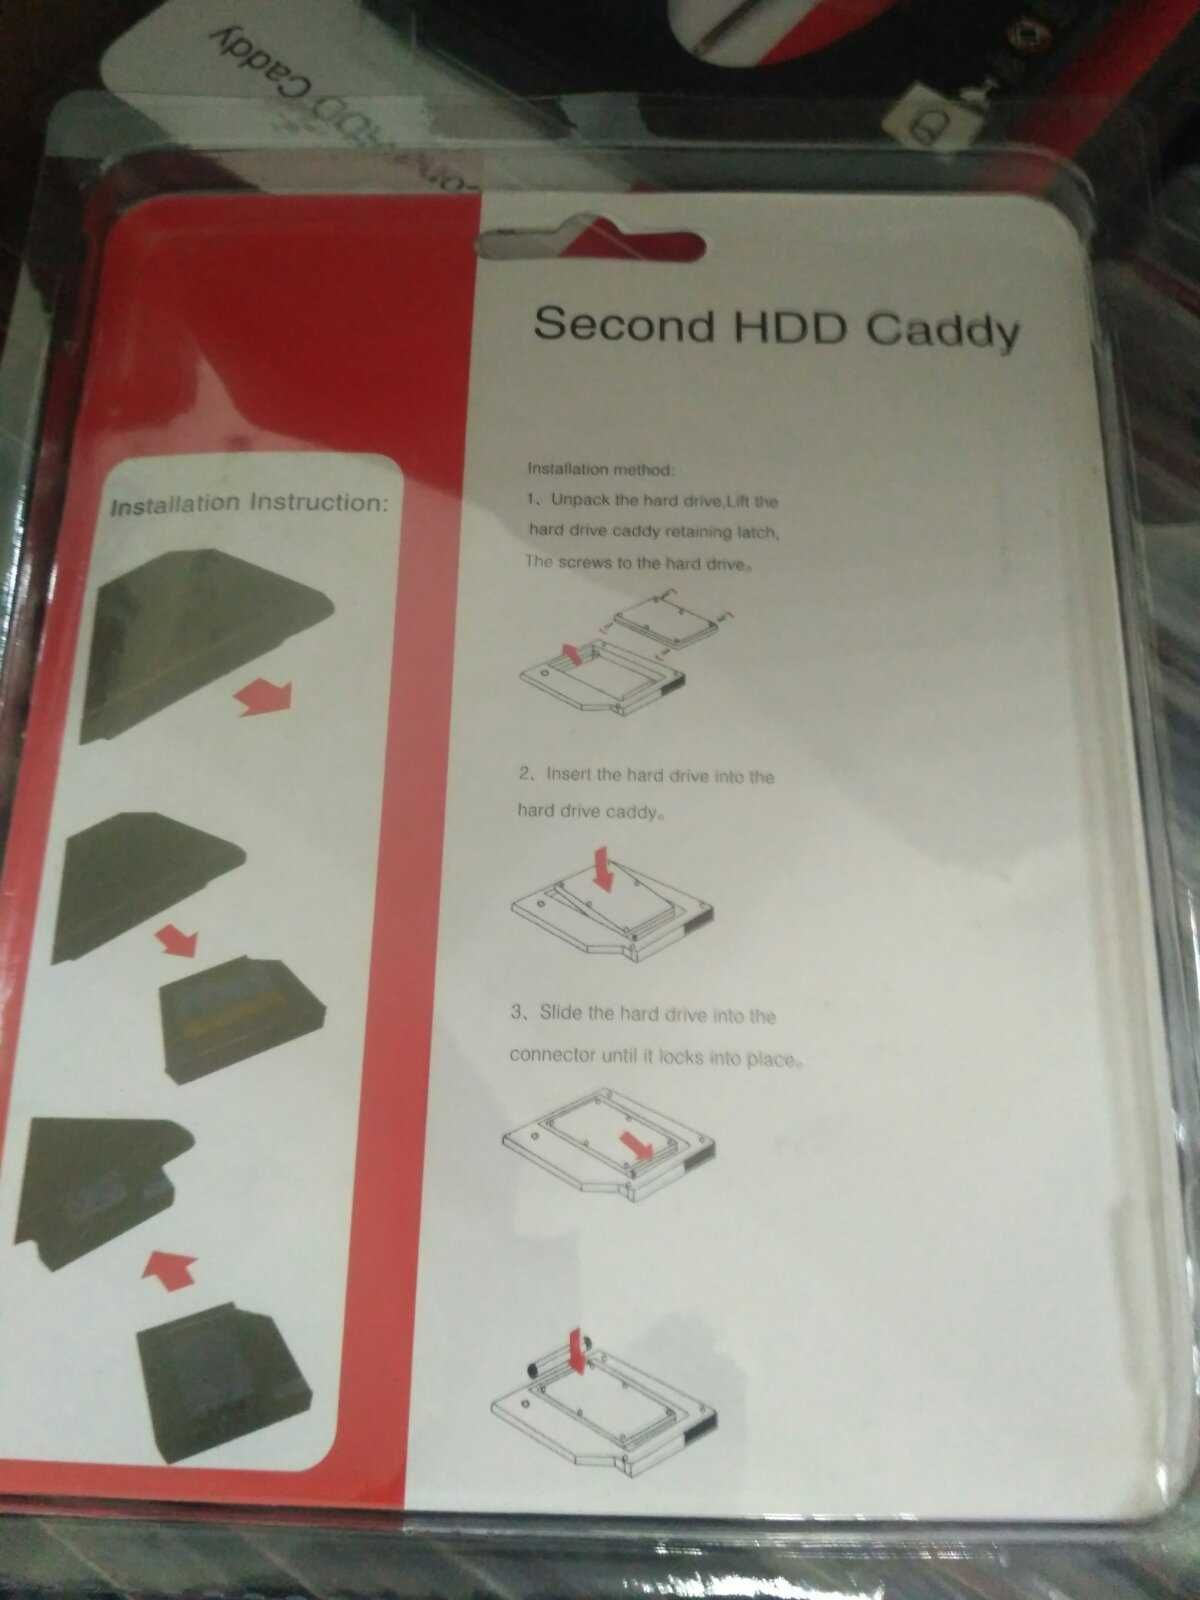 Кишеня Оptibay, оптібей, caddy 9.5 / 12.7 мм  адаптер SSD HDD, карман.